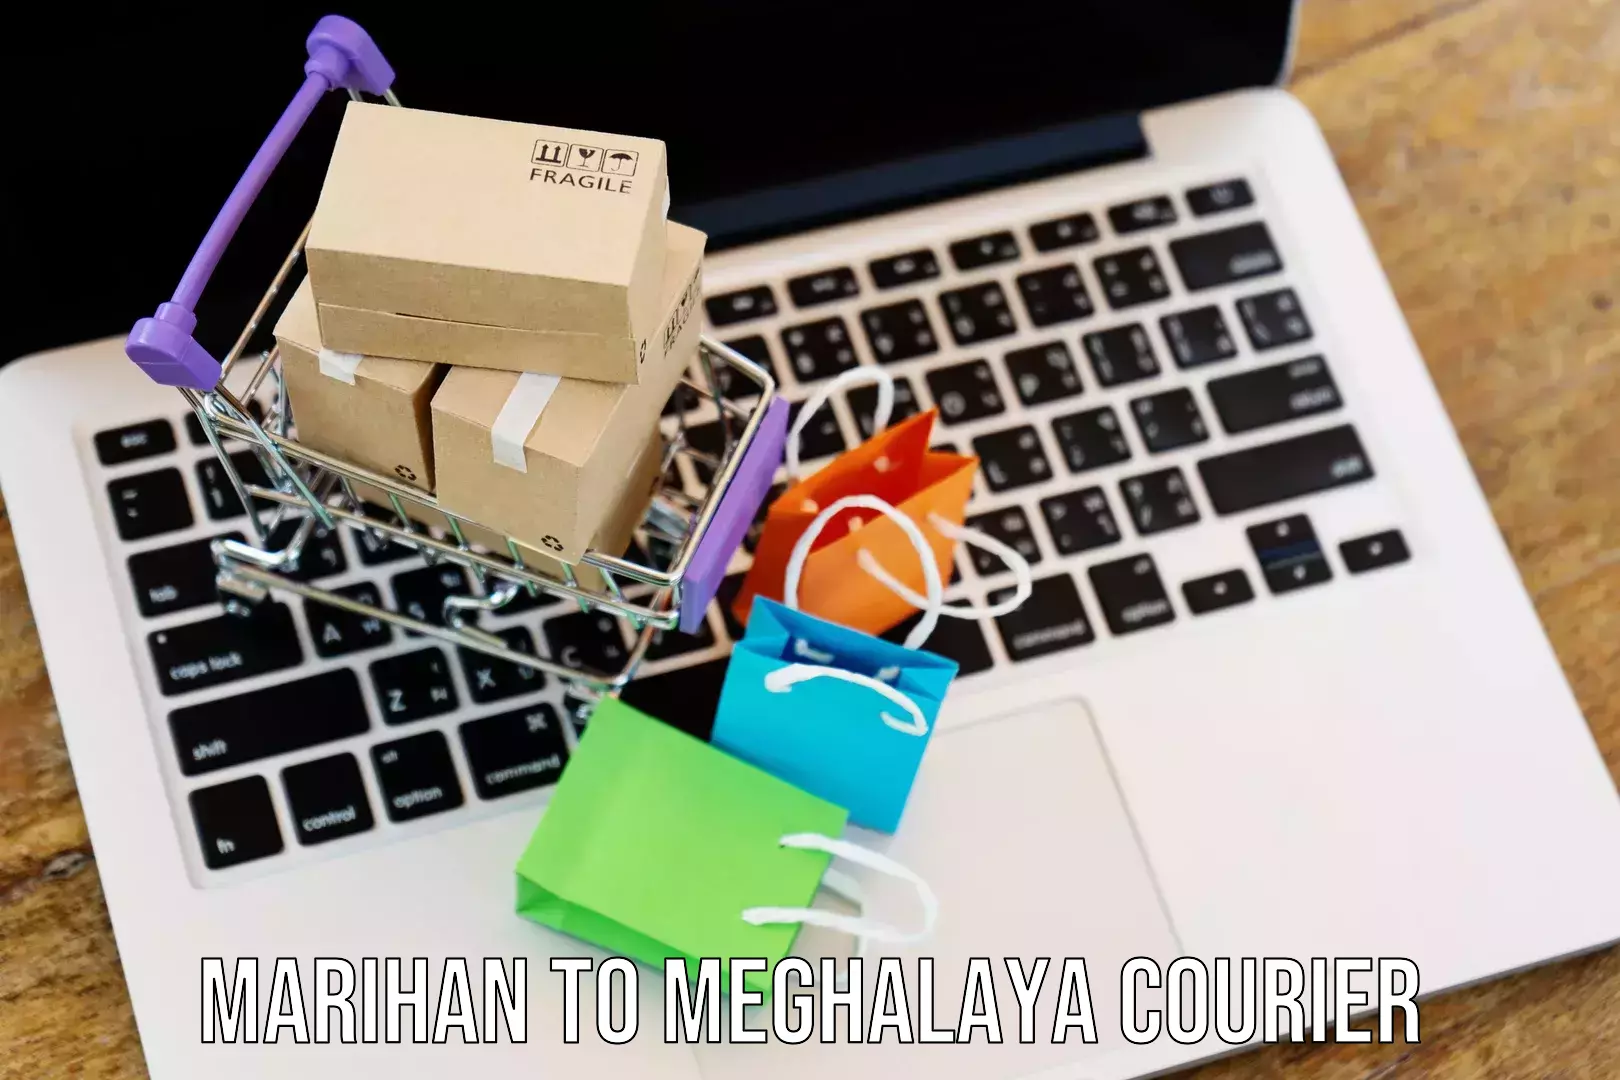 Door-to-door freight service Marihan to Meghalaya